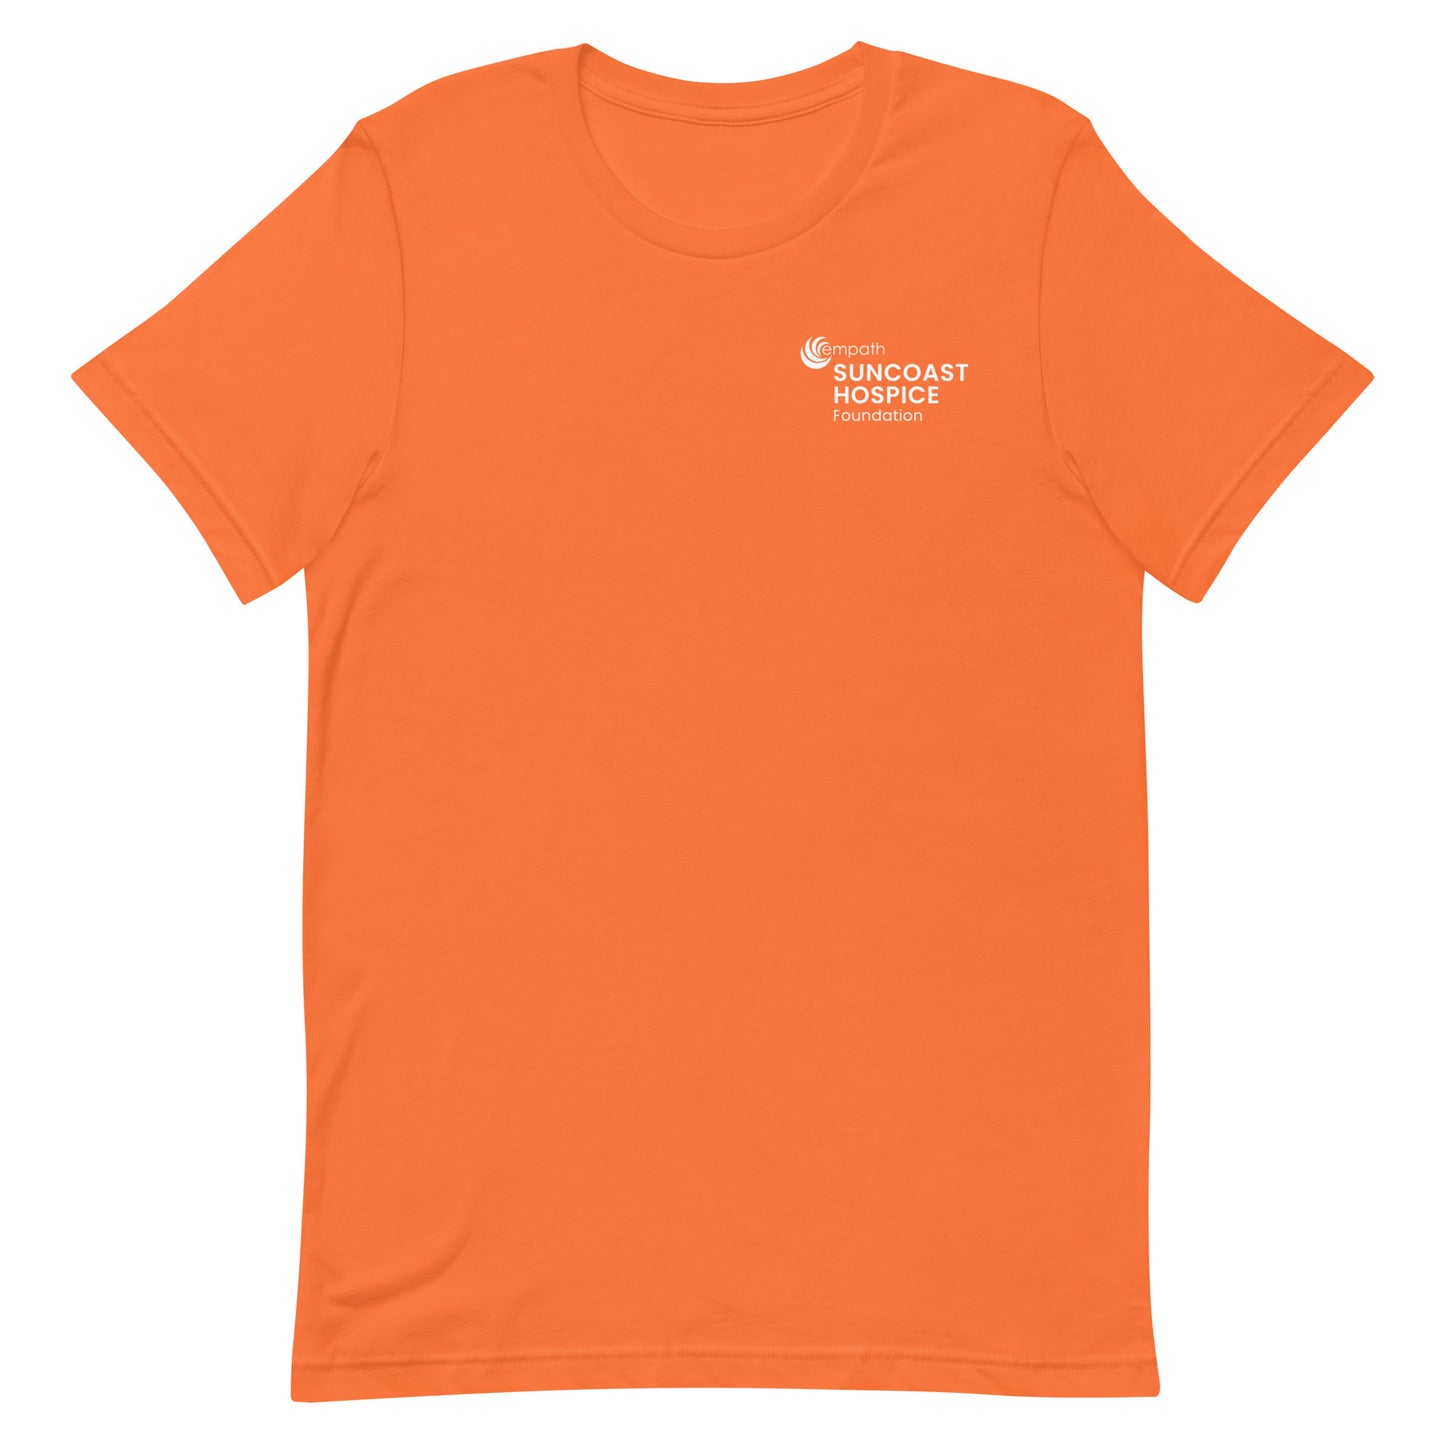 Unisex Classic T-shirt - Suncoast Hospice Foundation